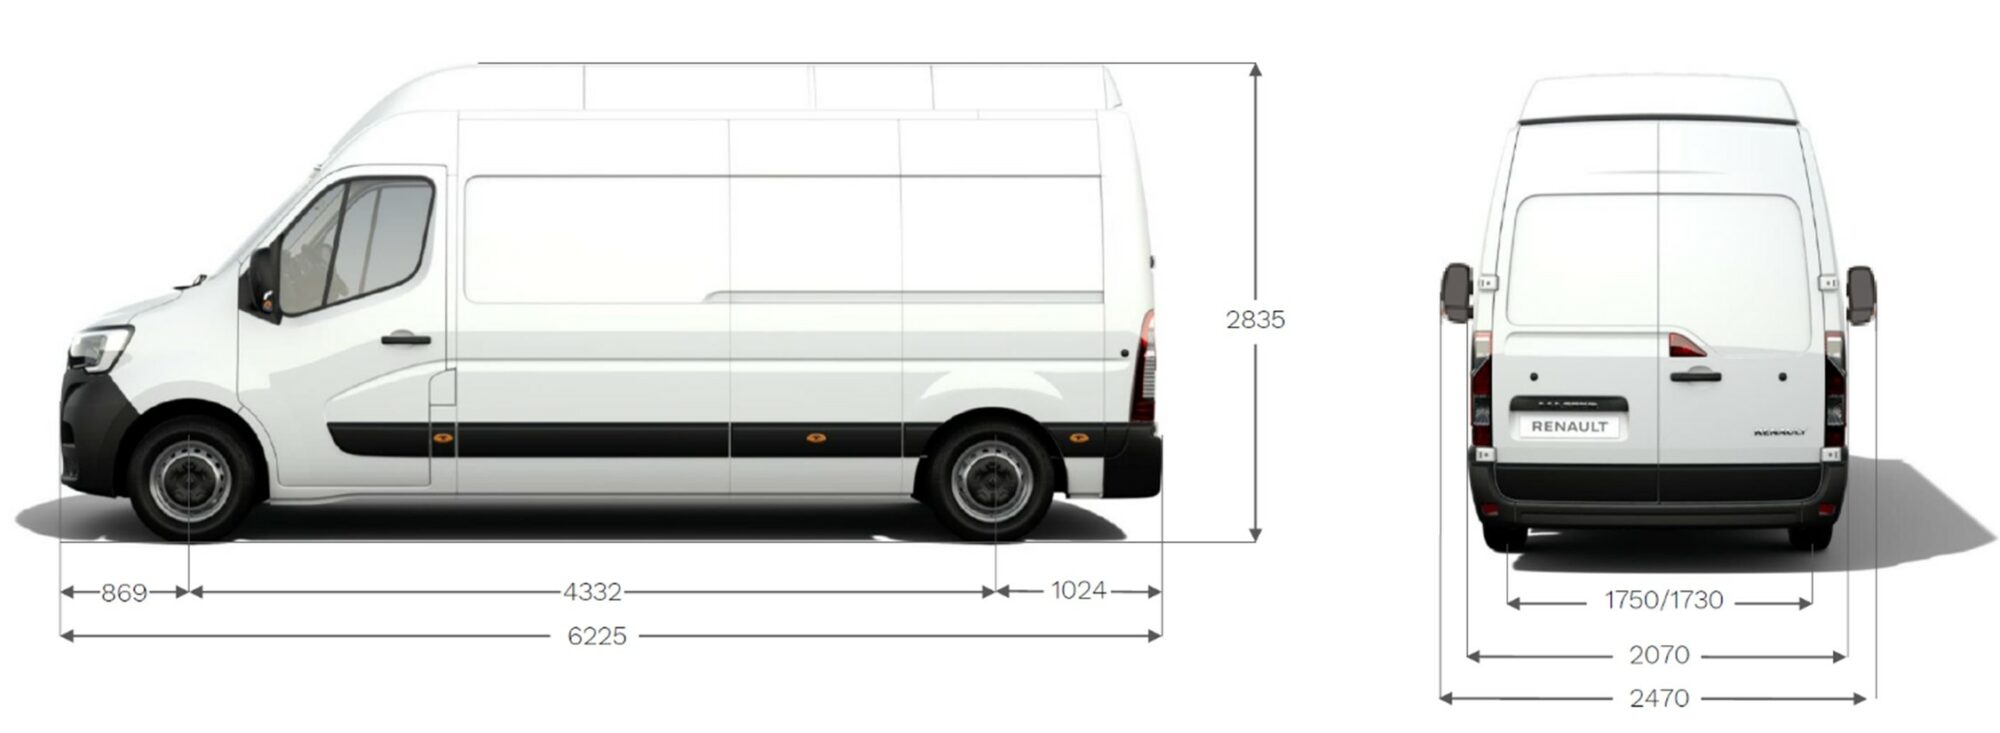 Renault Master Van H2-TECH - Dimensions